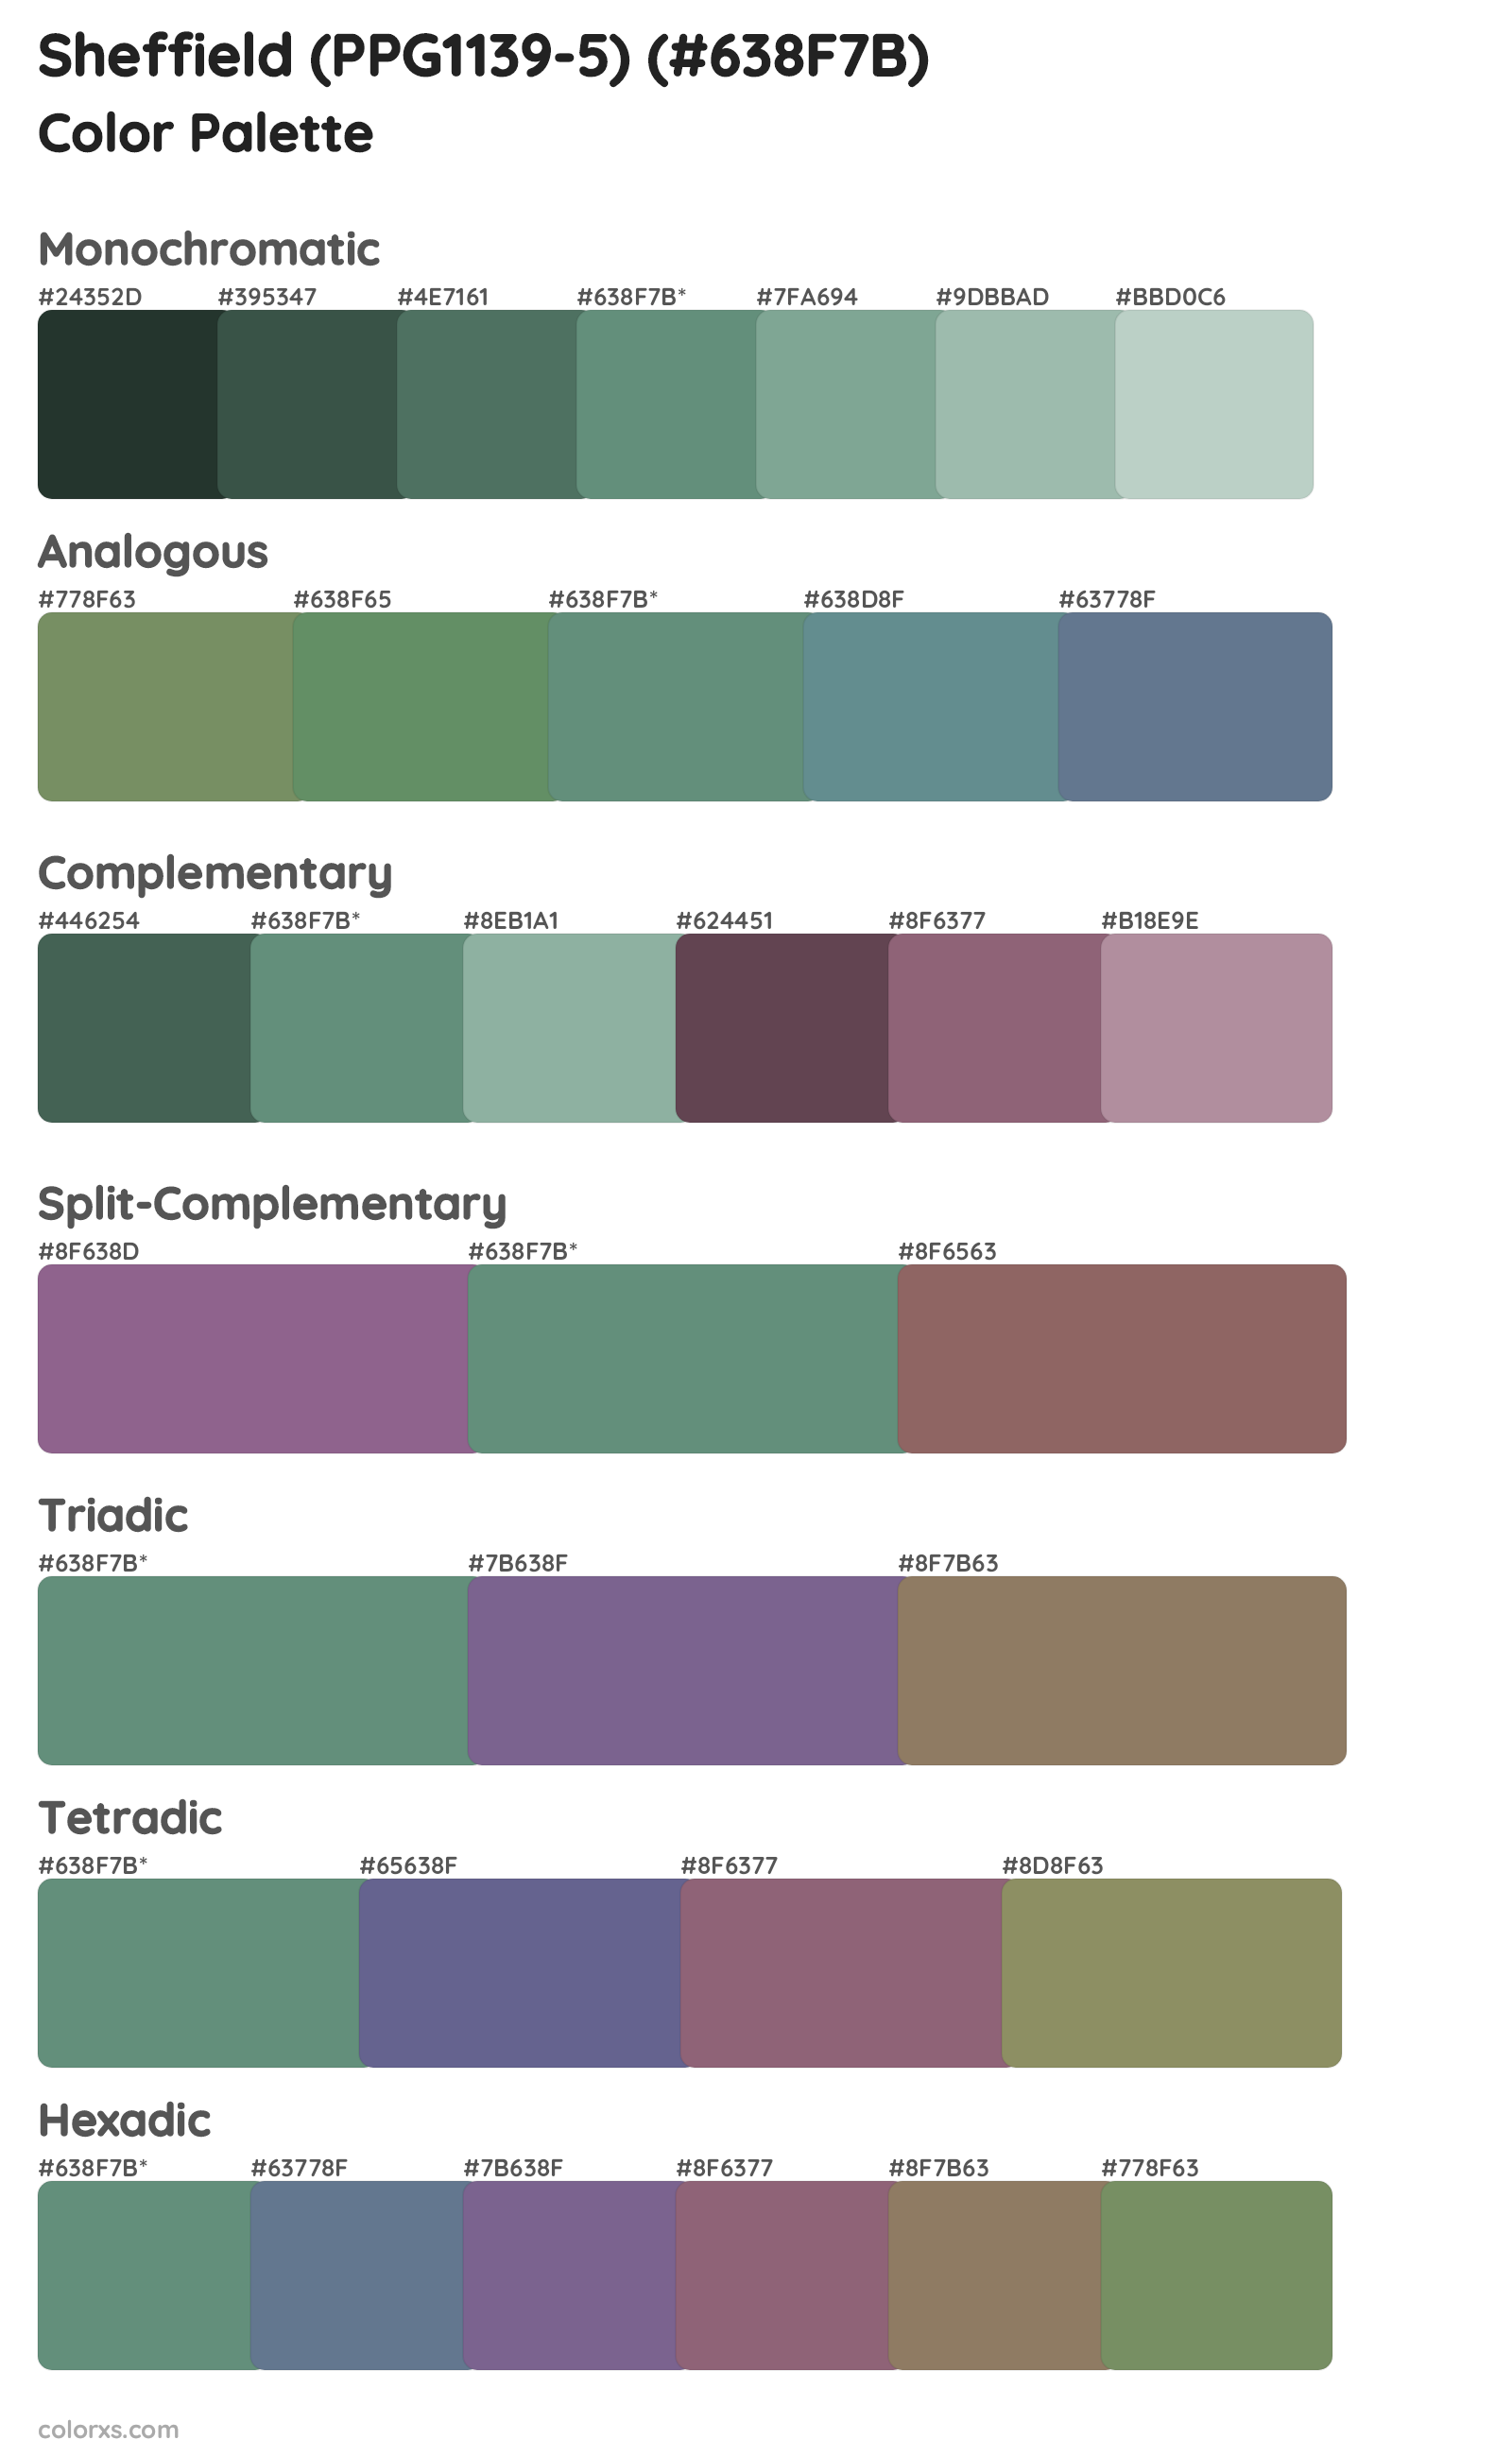 Sheffield (PPG1139-5) Color Scheme Palettes